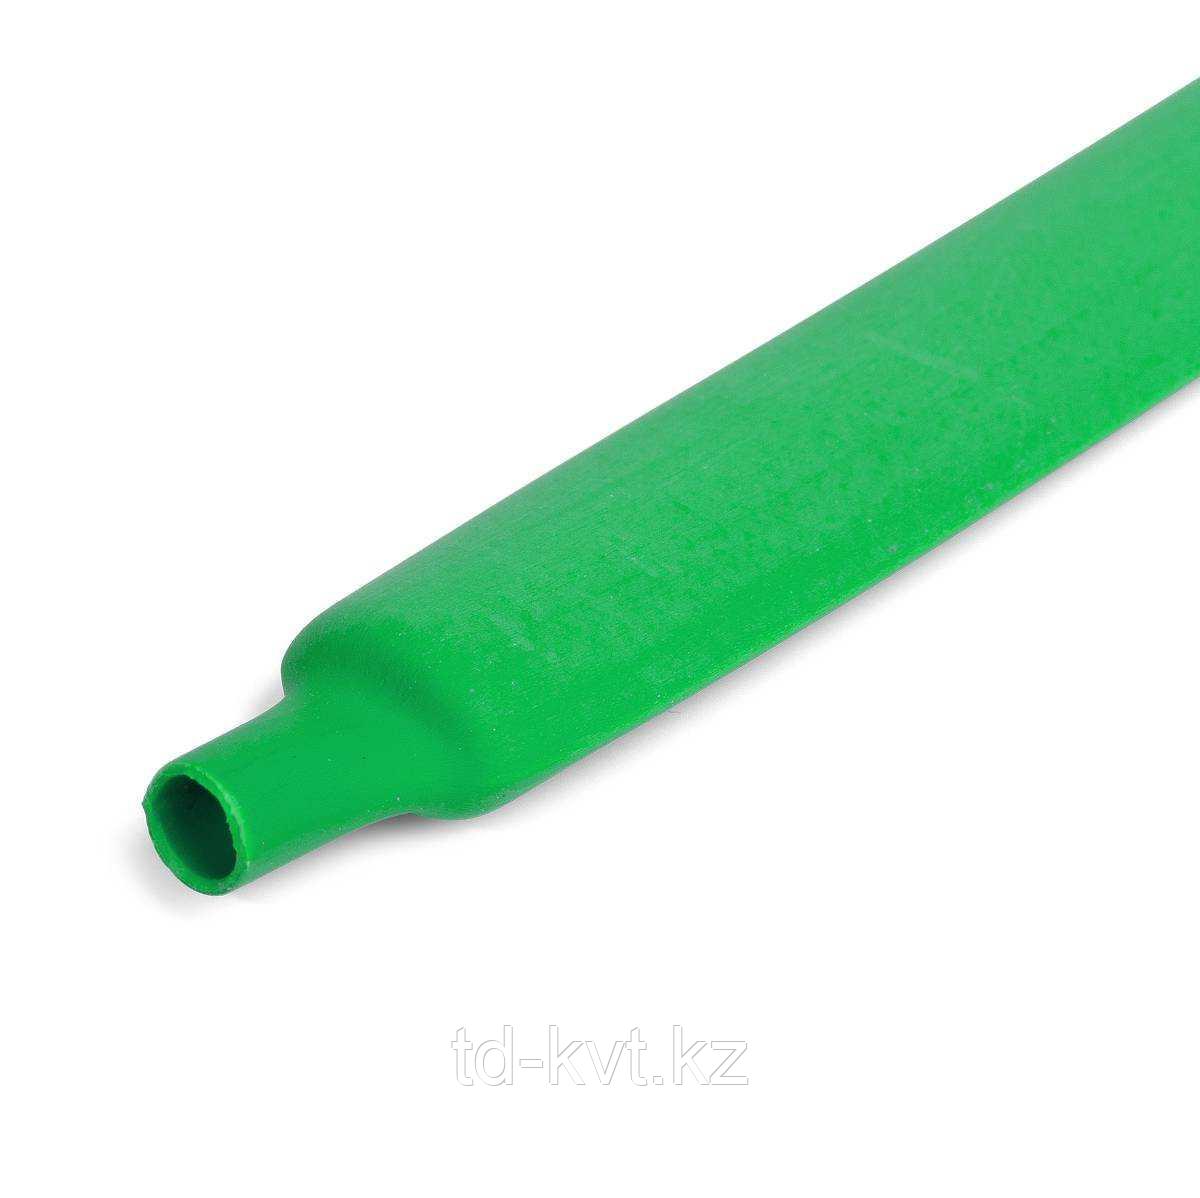 Цветная термоусадочная трубка с коэффициентом усадки 2:1 ТУТнг-4/2, зел